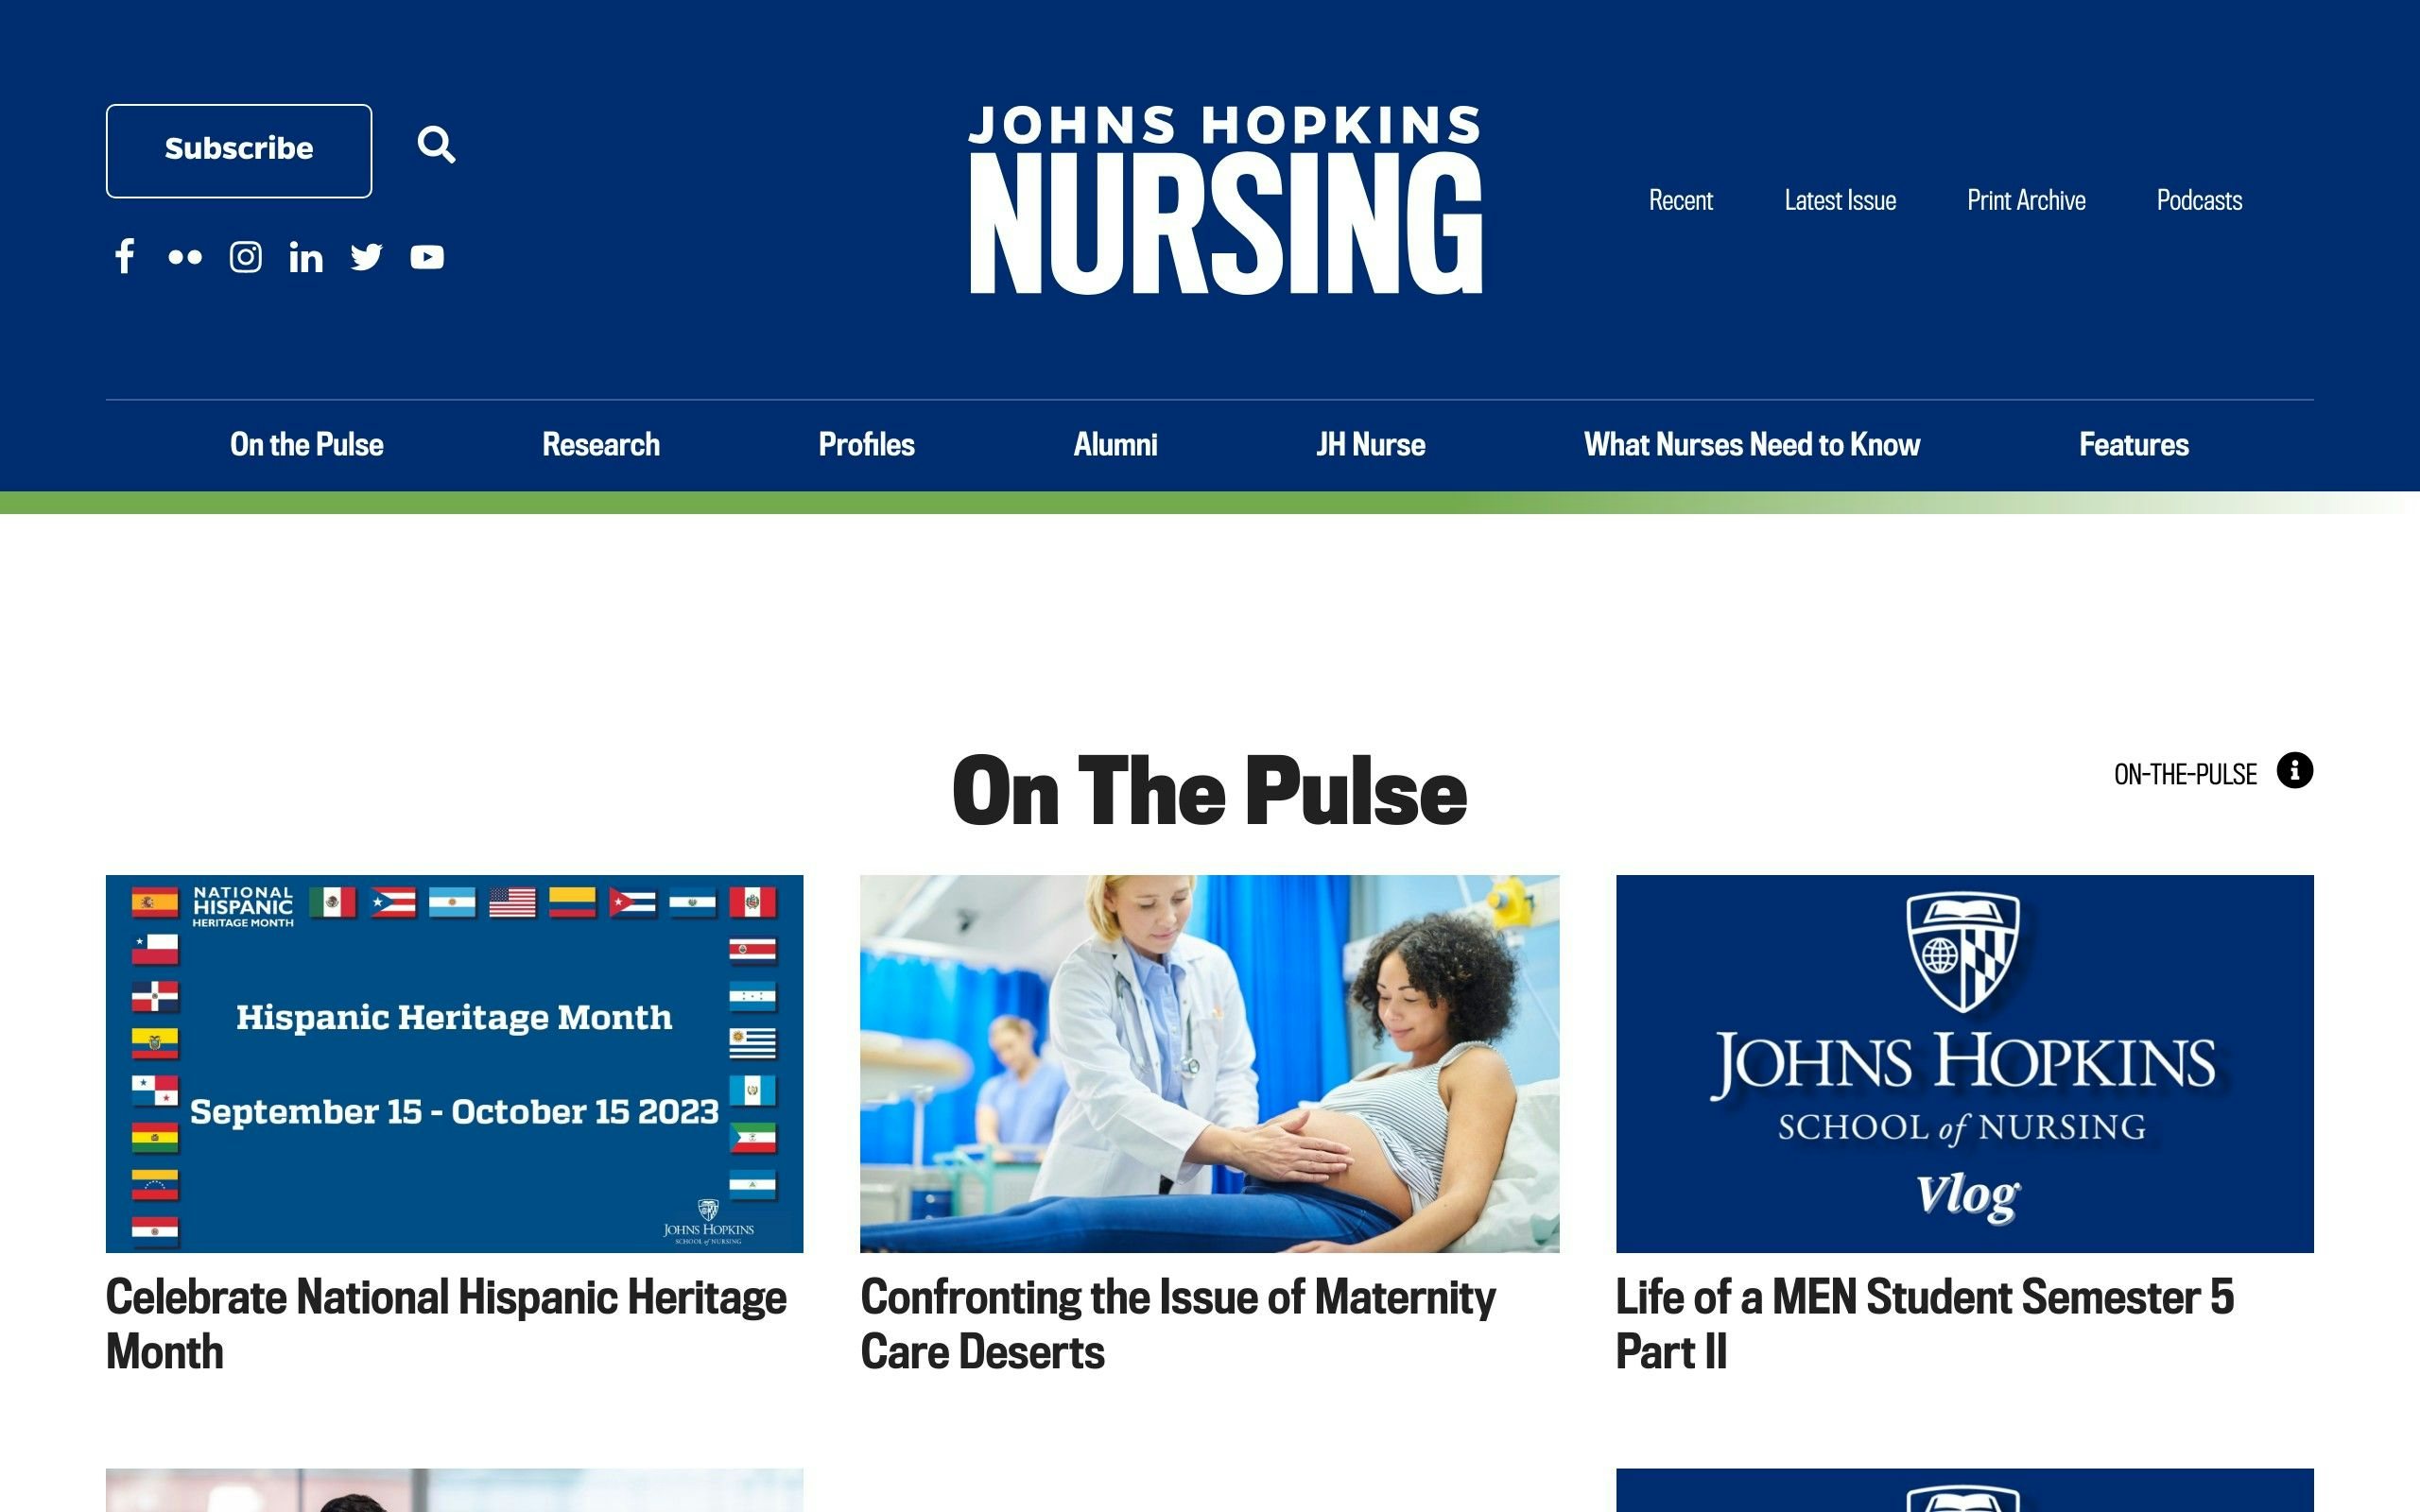 Johns Hopkins School of Nursing Blog